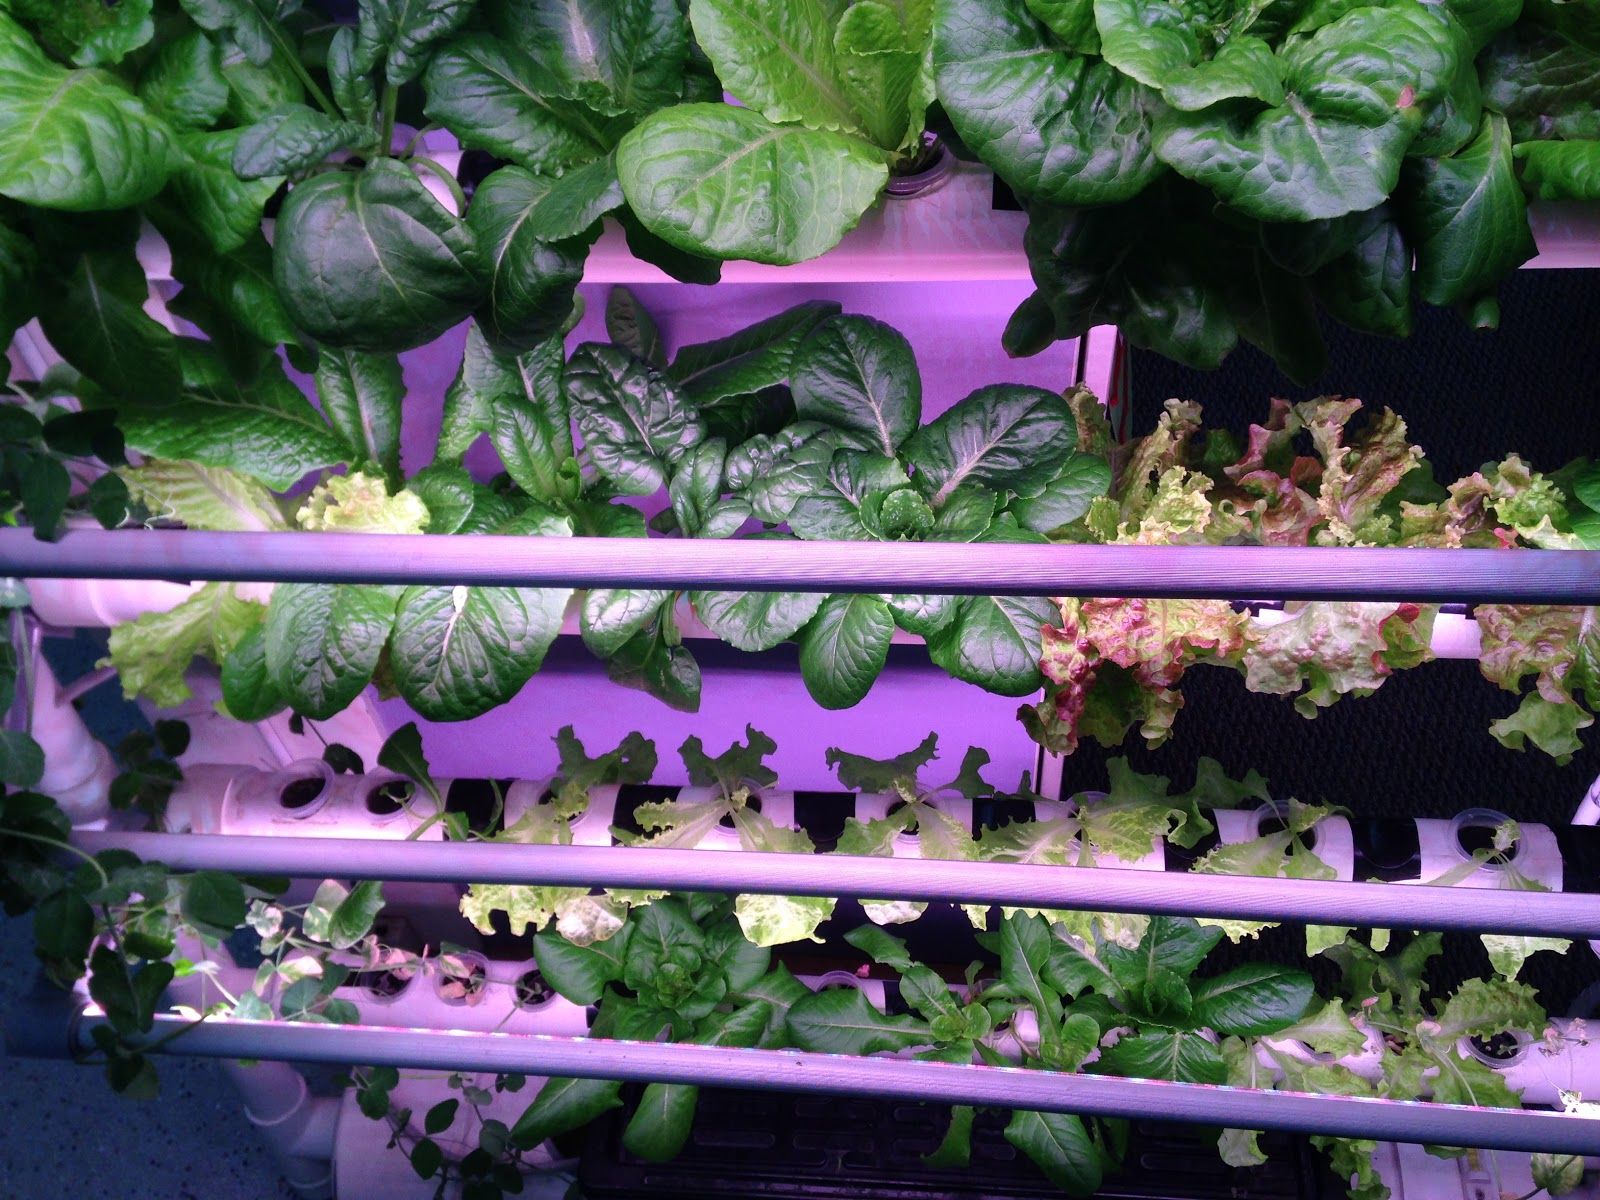 NFT Hydroponics setup growing lettuce